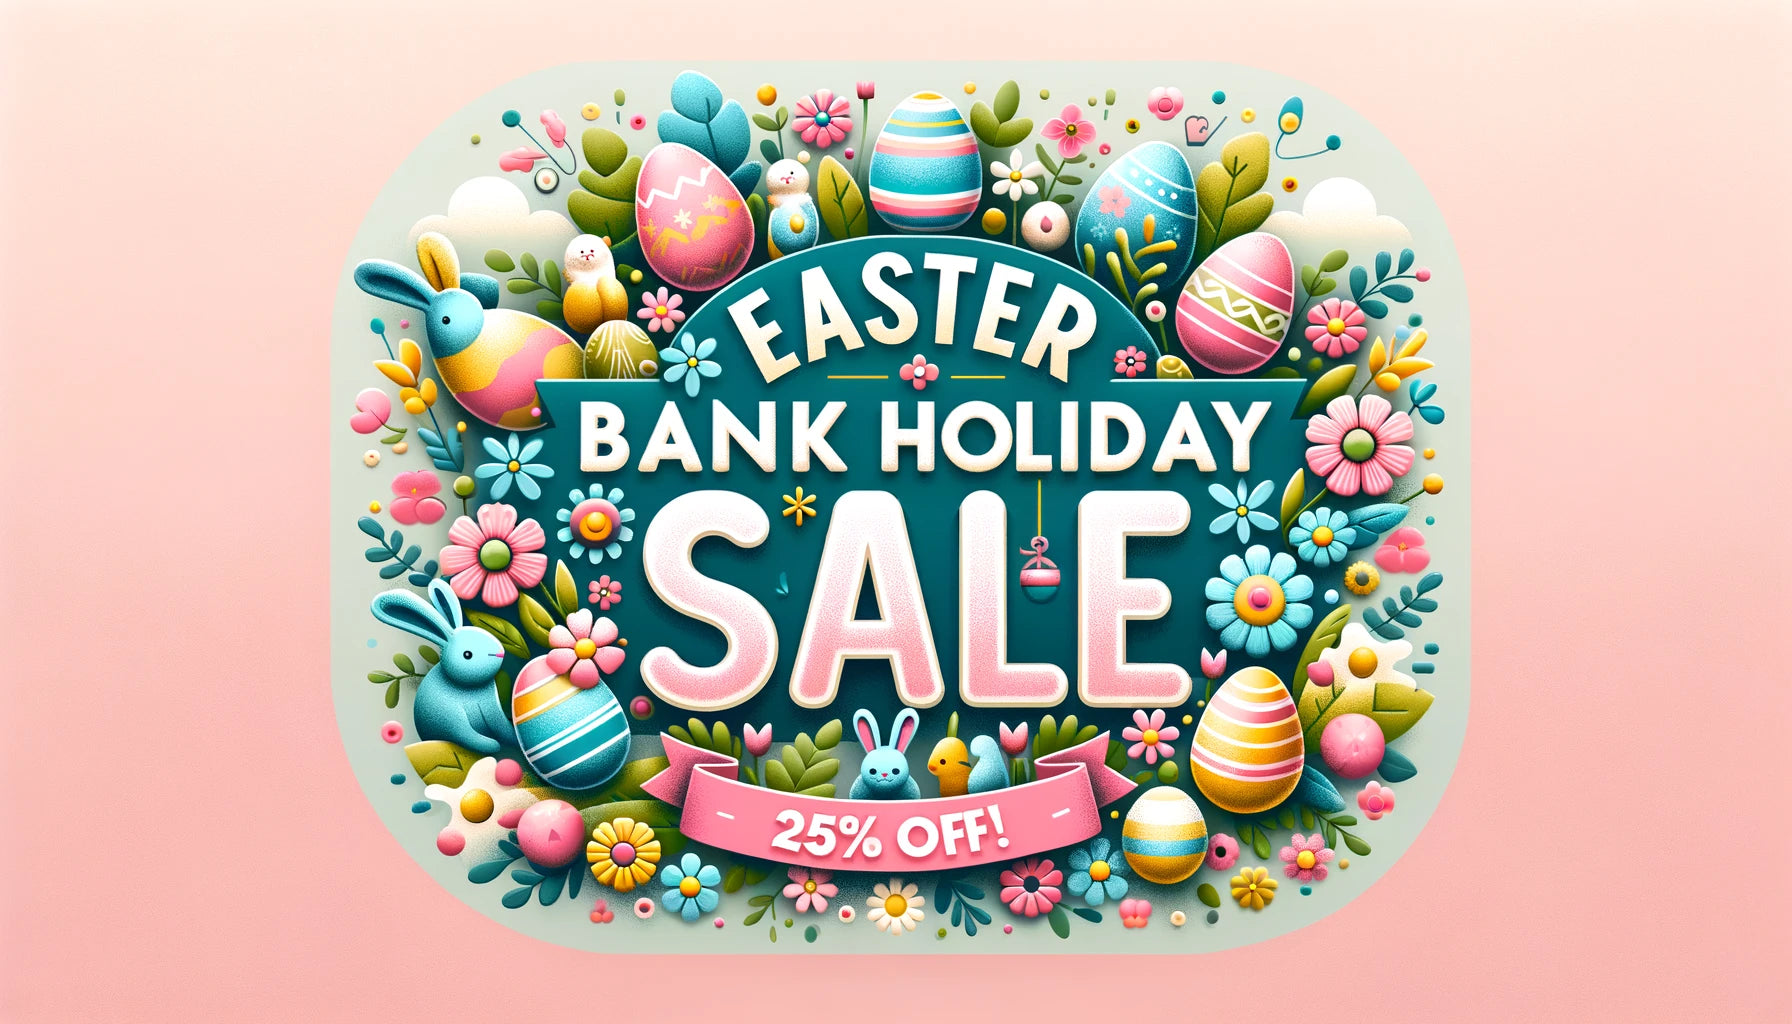 Ein festliches und auffälliges Blogpost-Banner für einen Feiertagsverkauf zu Ostern mit dem Thema Ostern und Frühling.